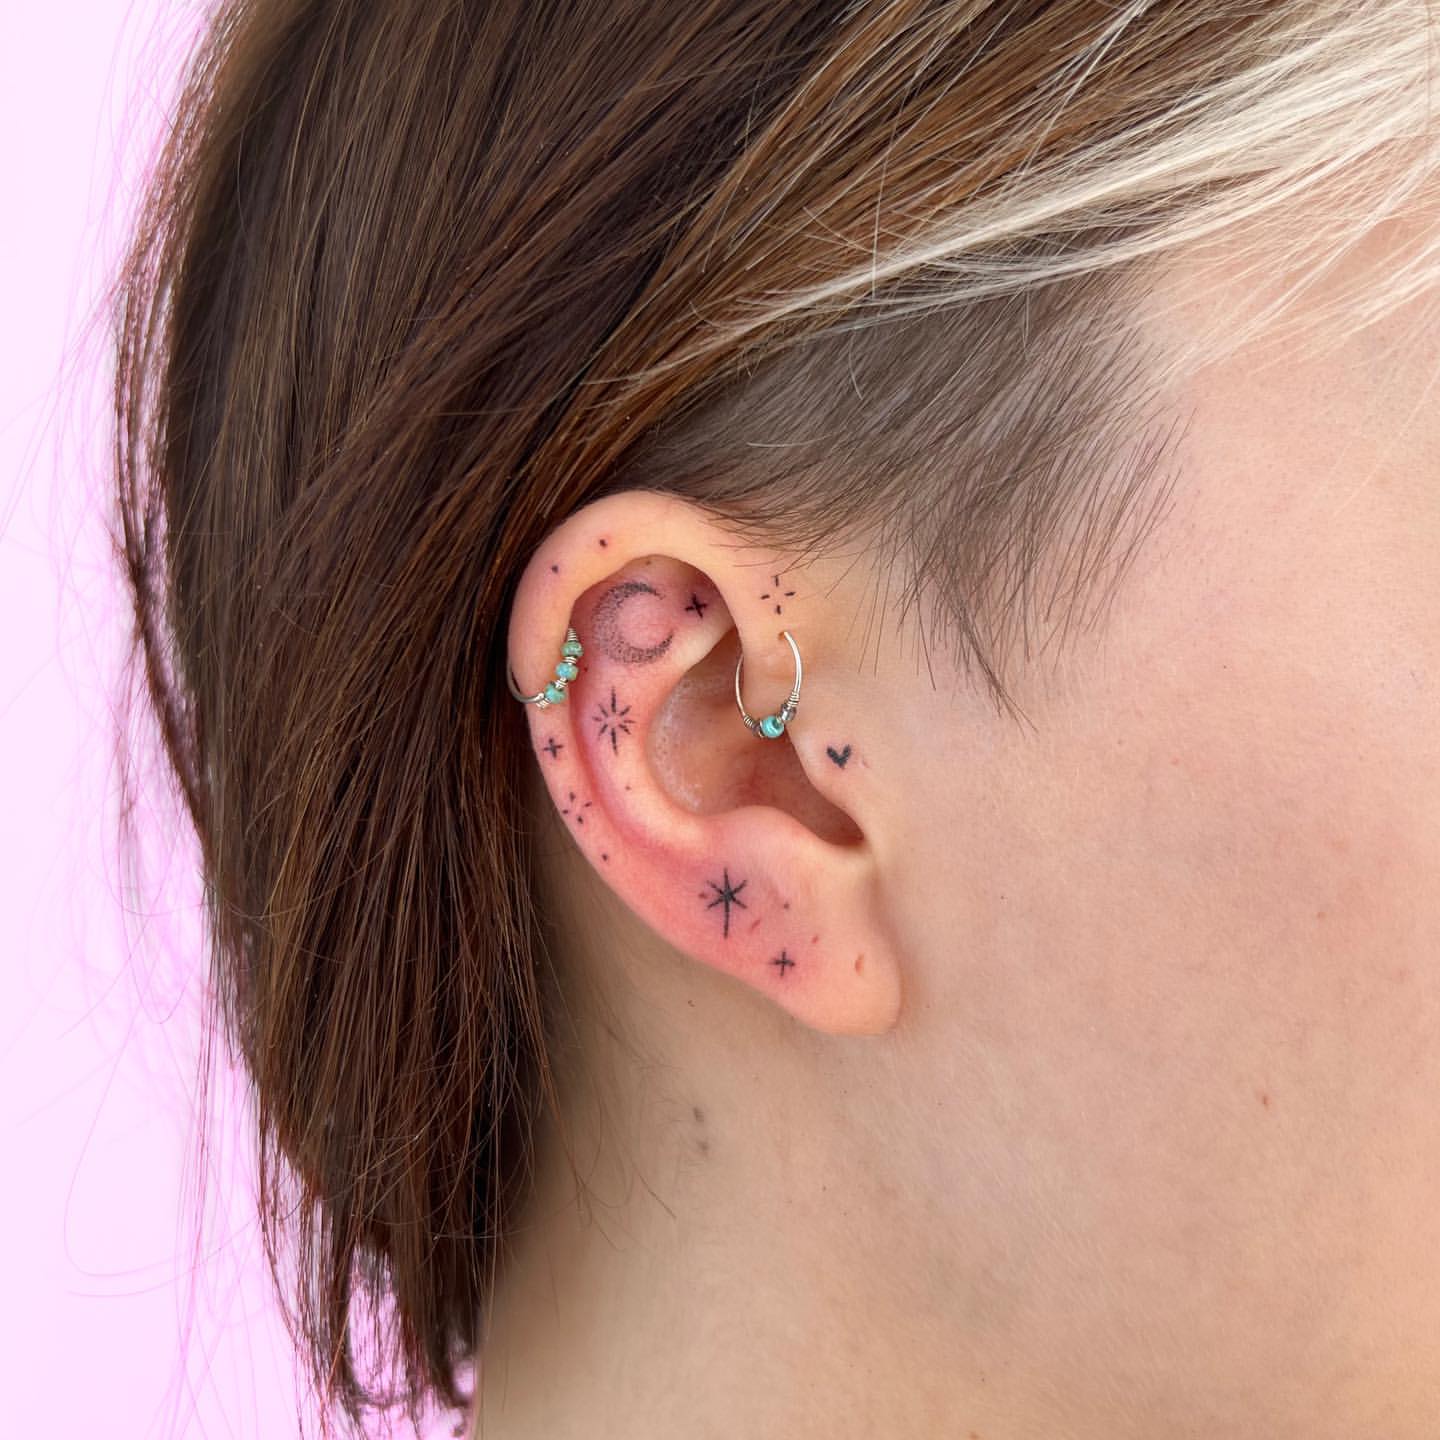 Ear Tattoo Ideas 22